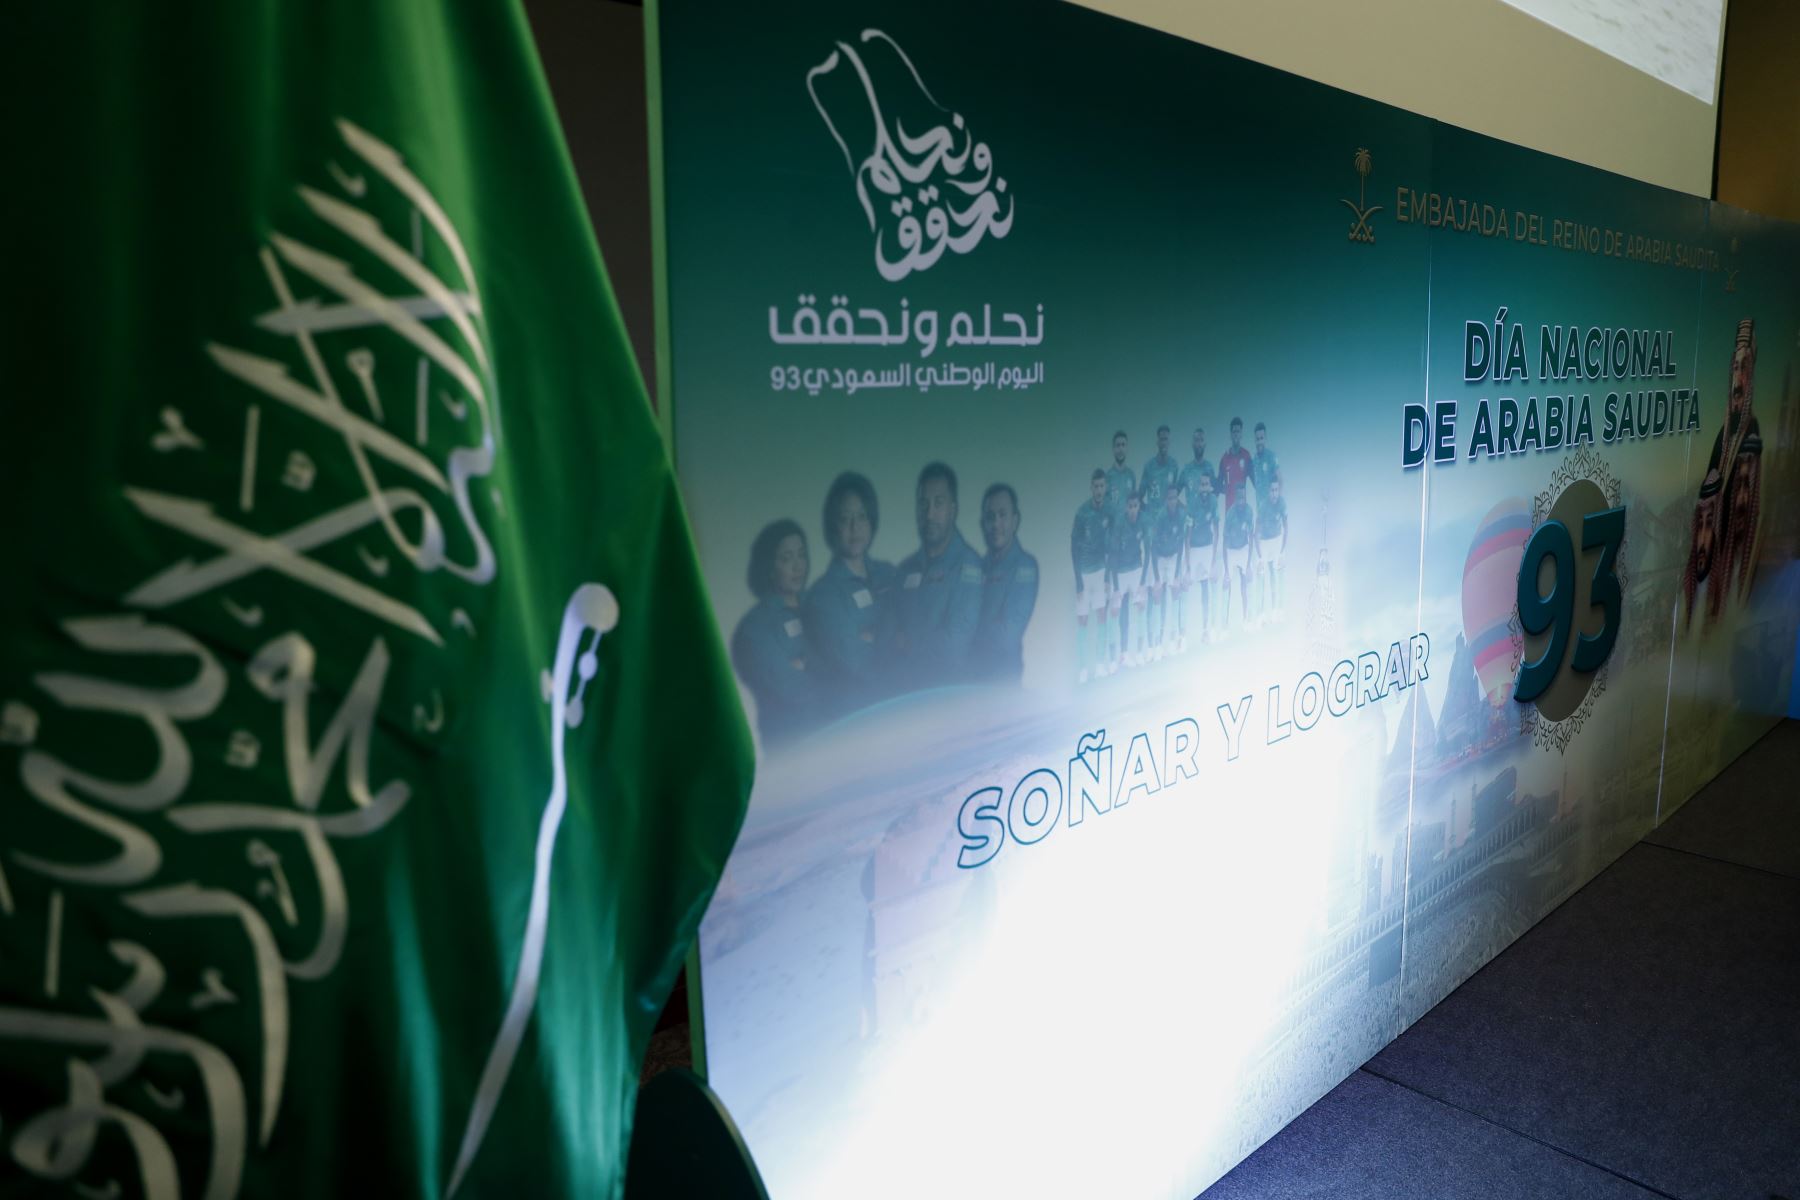 La ceremonia por el Día Nacional de Arabia Saudita se realizó en el Swissotel de San Isidro, con la participación de importantes personalidades del ámbito político y gubernamental. Foto: ANDINA/Daniel Bracamonte